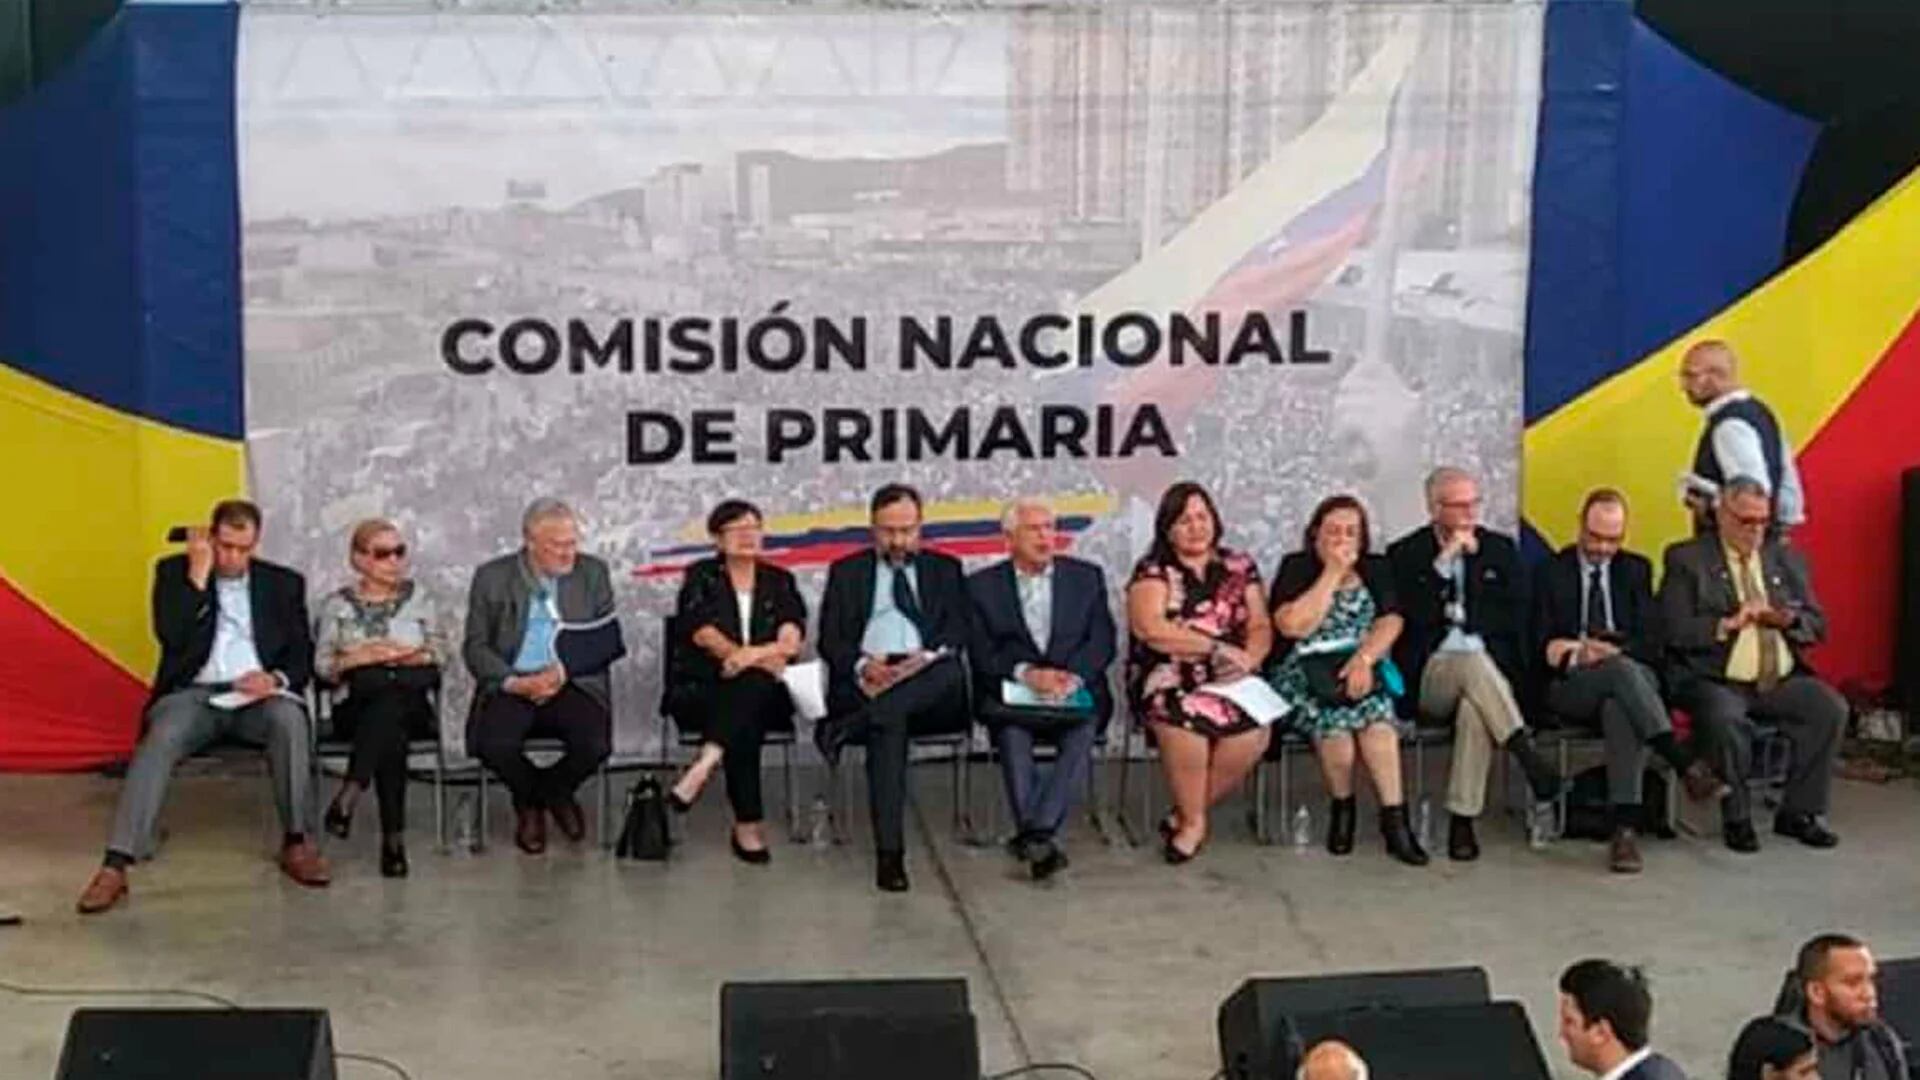 Pese a las presiones de la dictadura chavista, la Comisión Nacional de Primaria ratificó la validez de las candidaturas opositoras